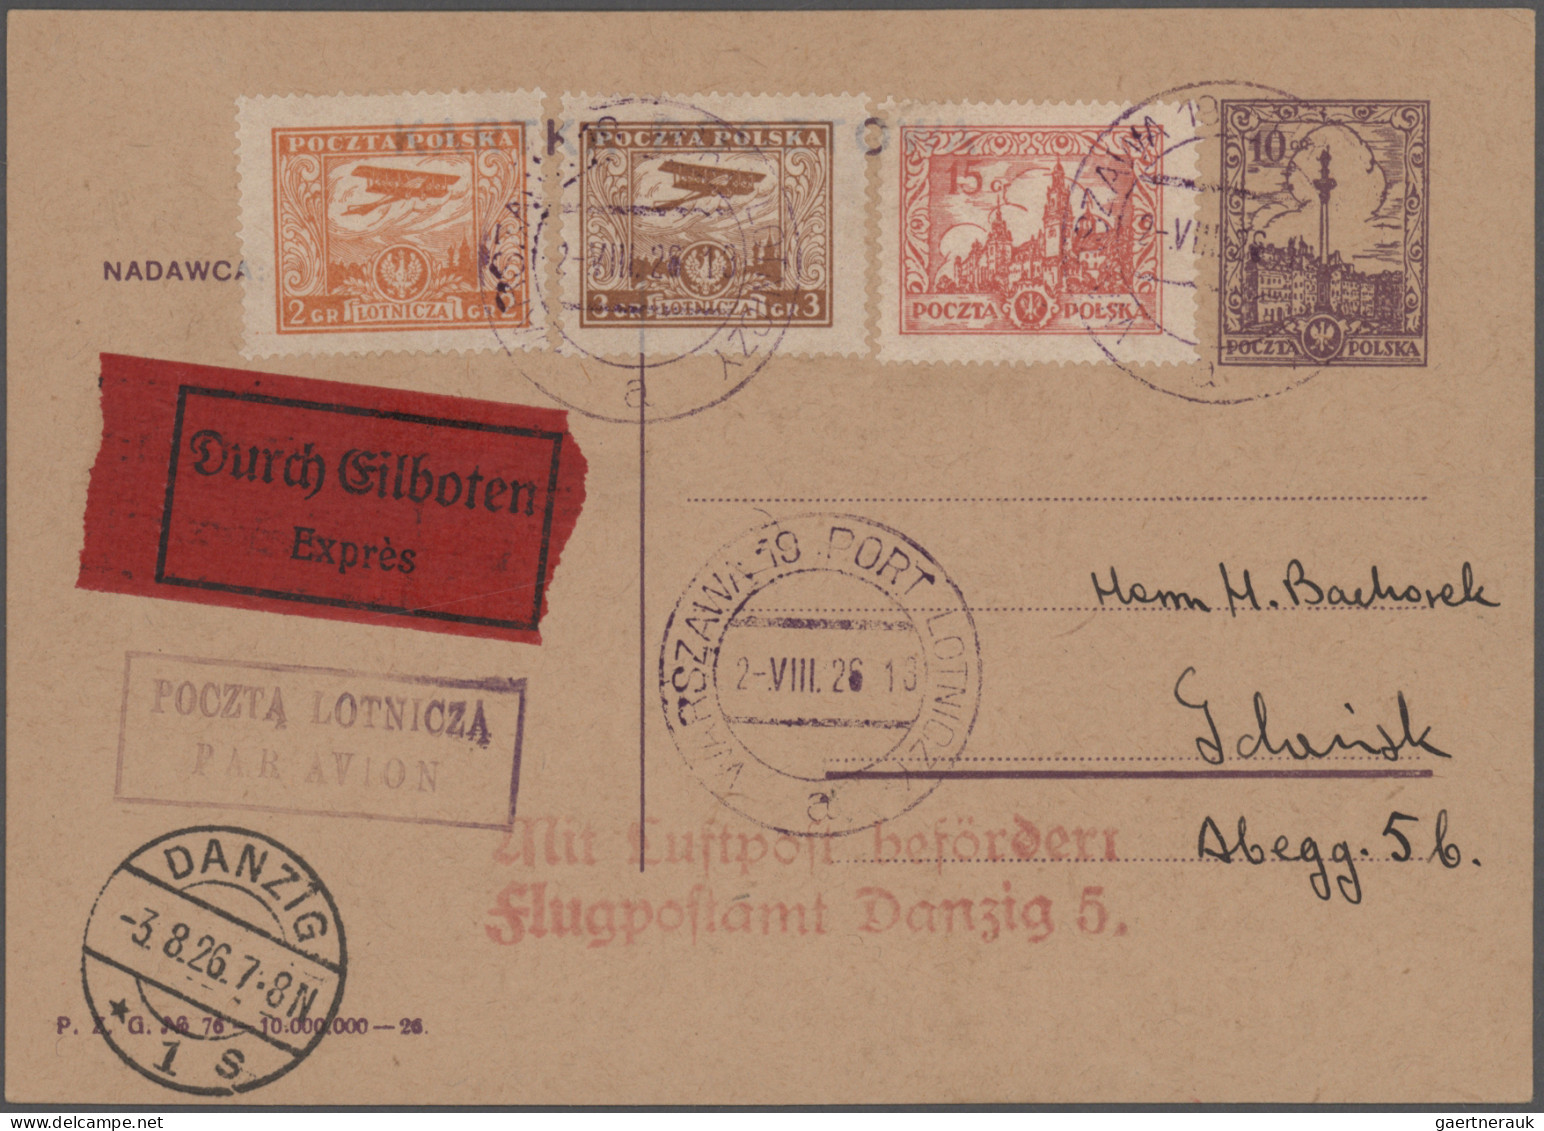 Danzig - Flugpost: 1922/1937, interessanter Posten mit 70 Briefen, Karten und Ga